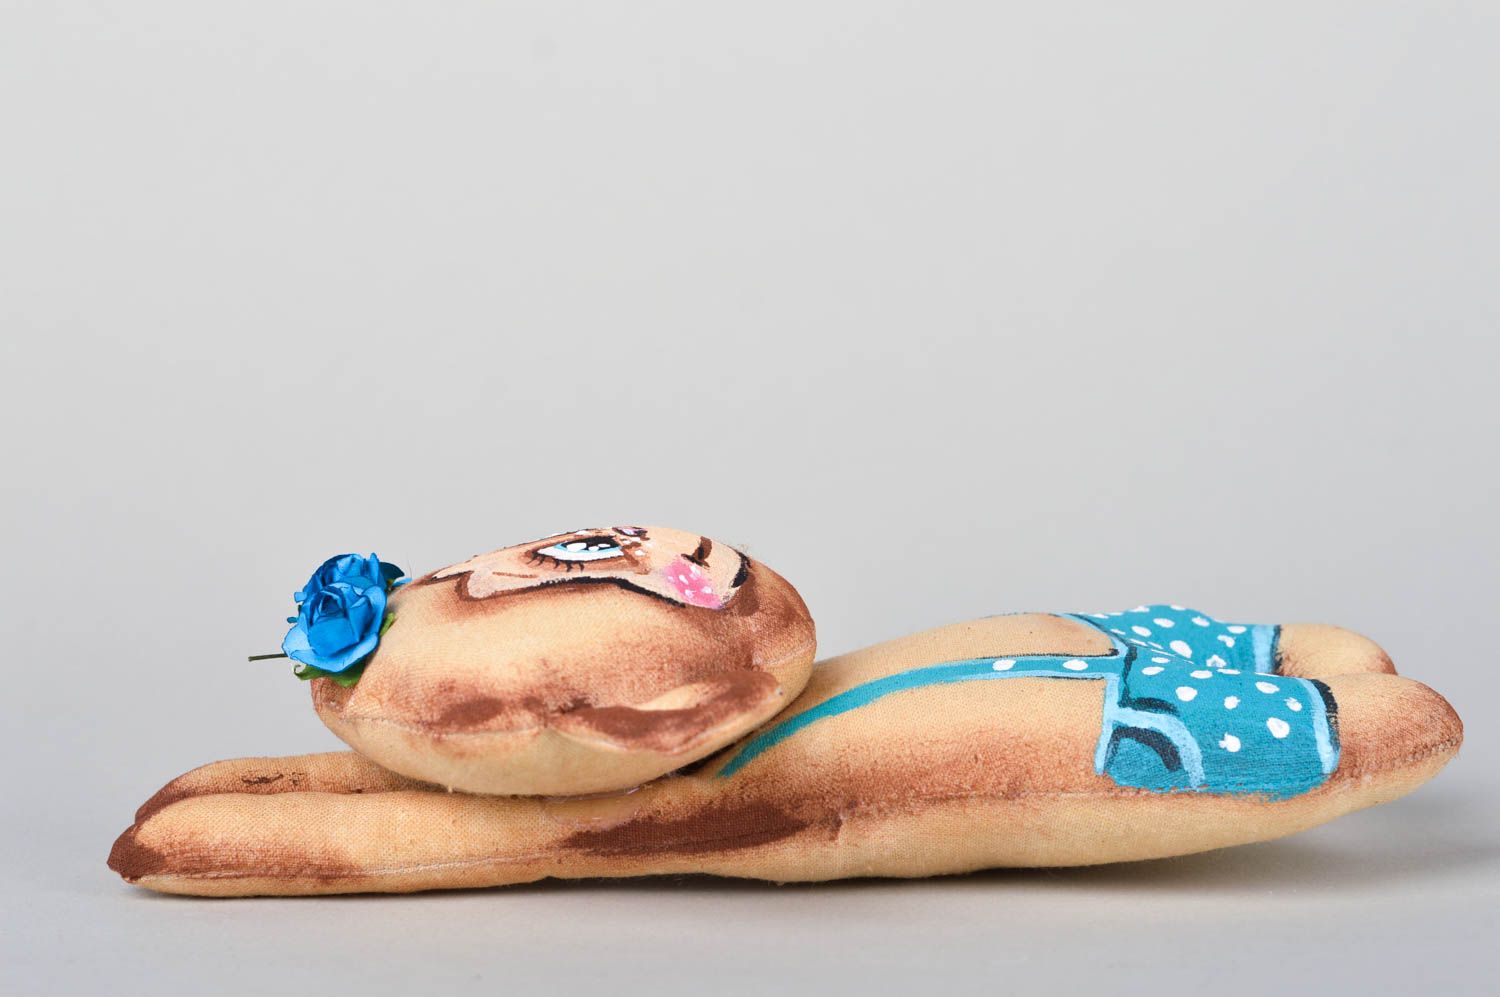 Mono de peluche divertido hecho a mano juguete infantil decoración de interior  foto 2